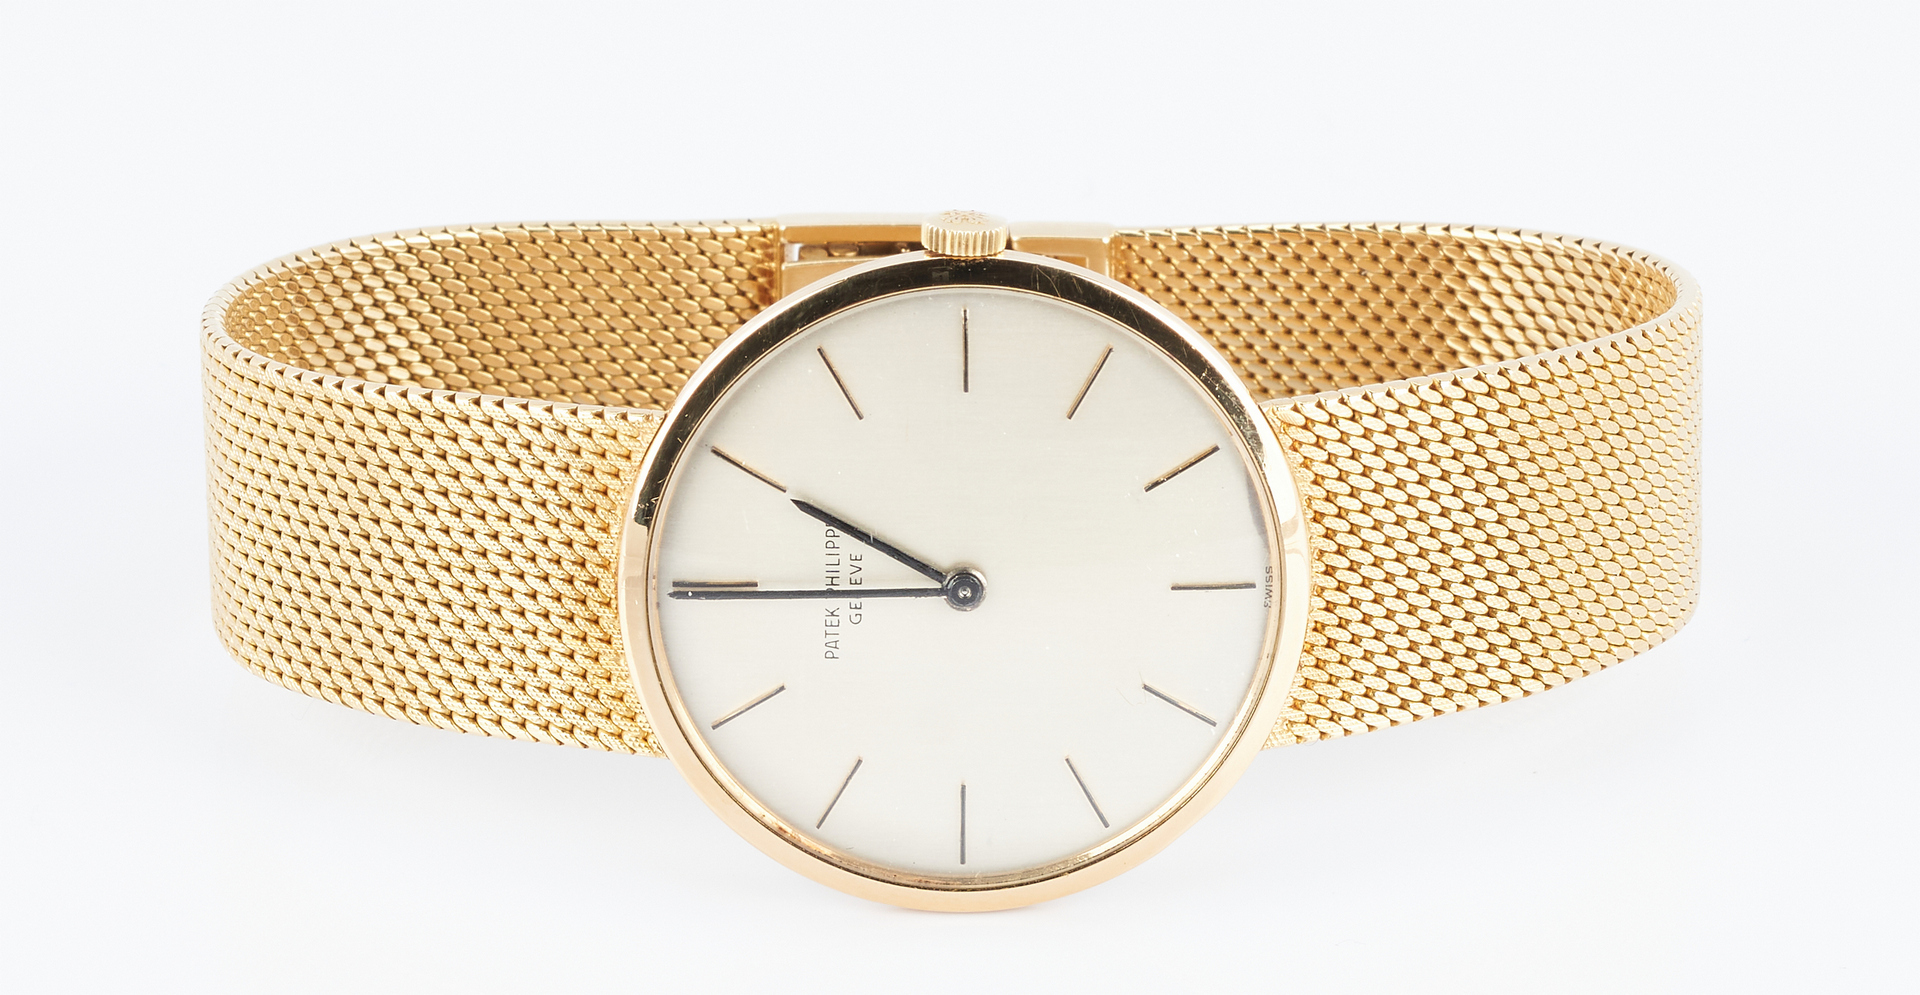 Lot 44: Patek Philippe 18K Yellow Gold Wrist Watch